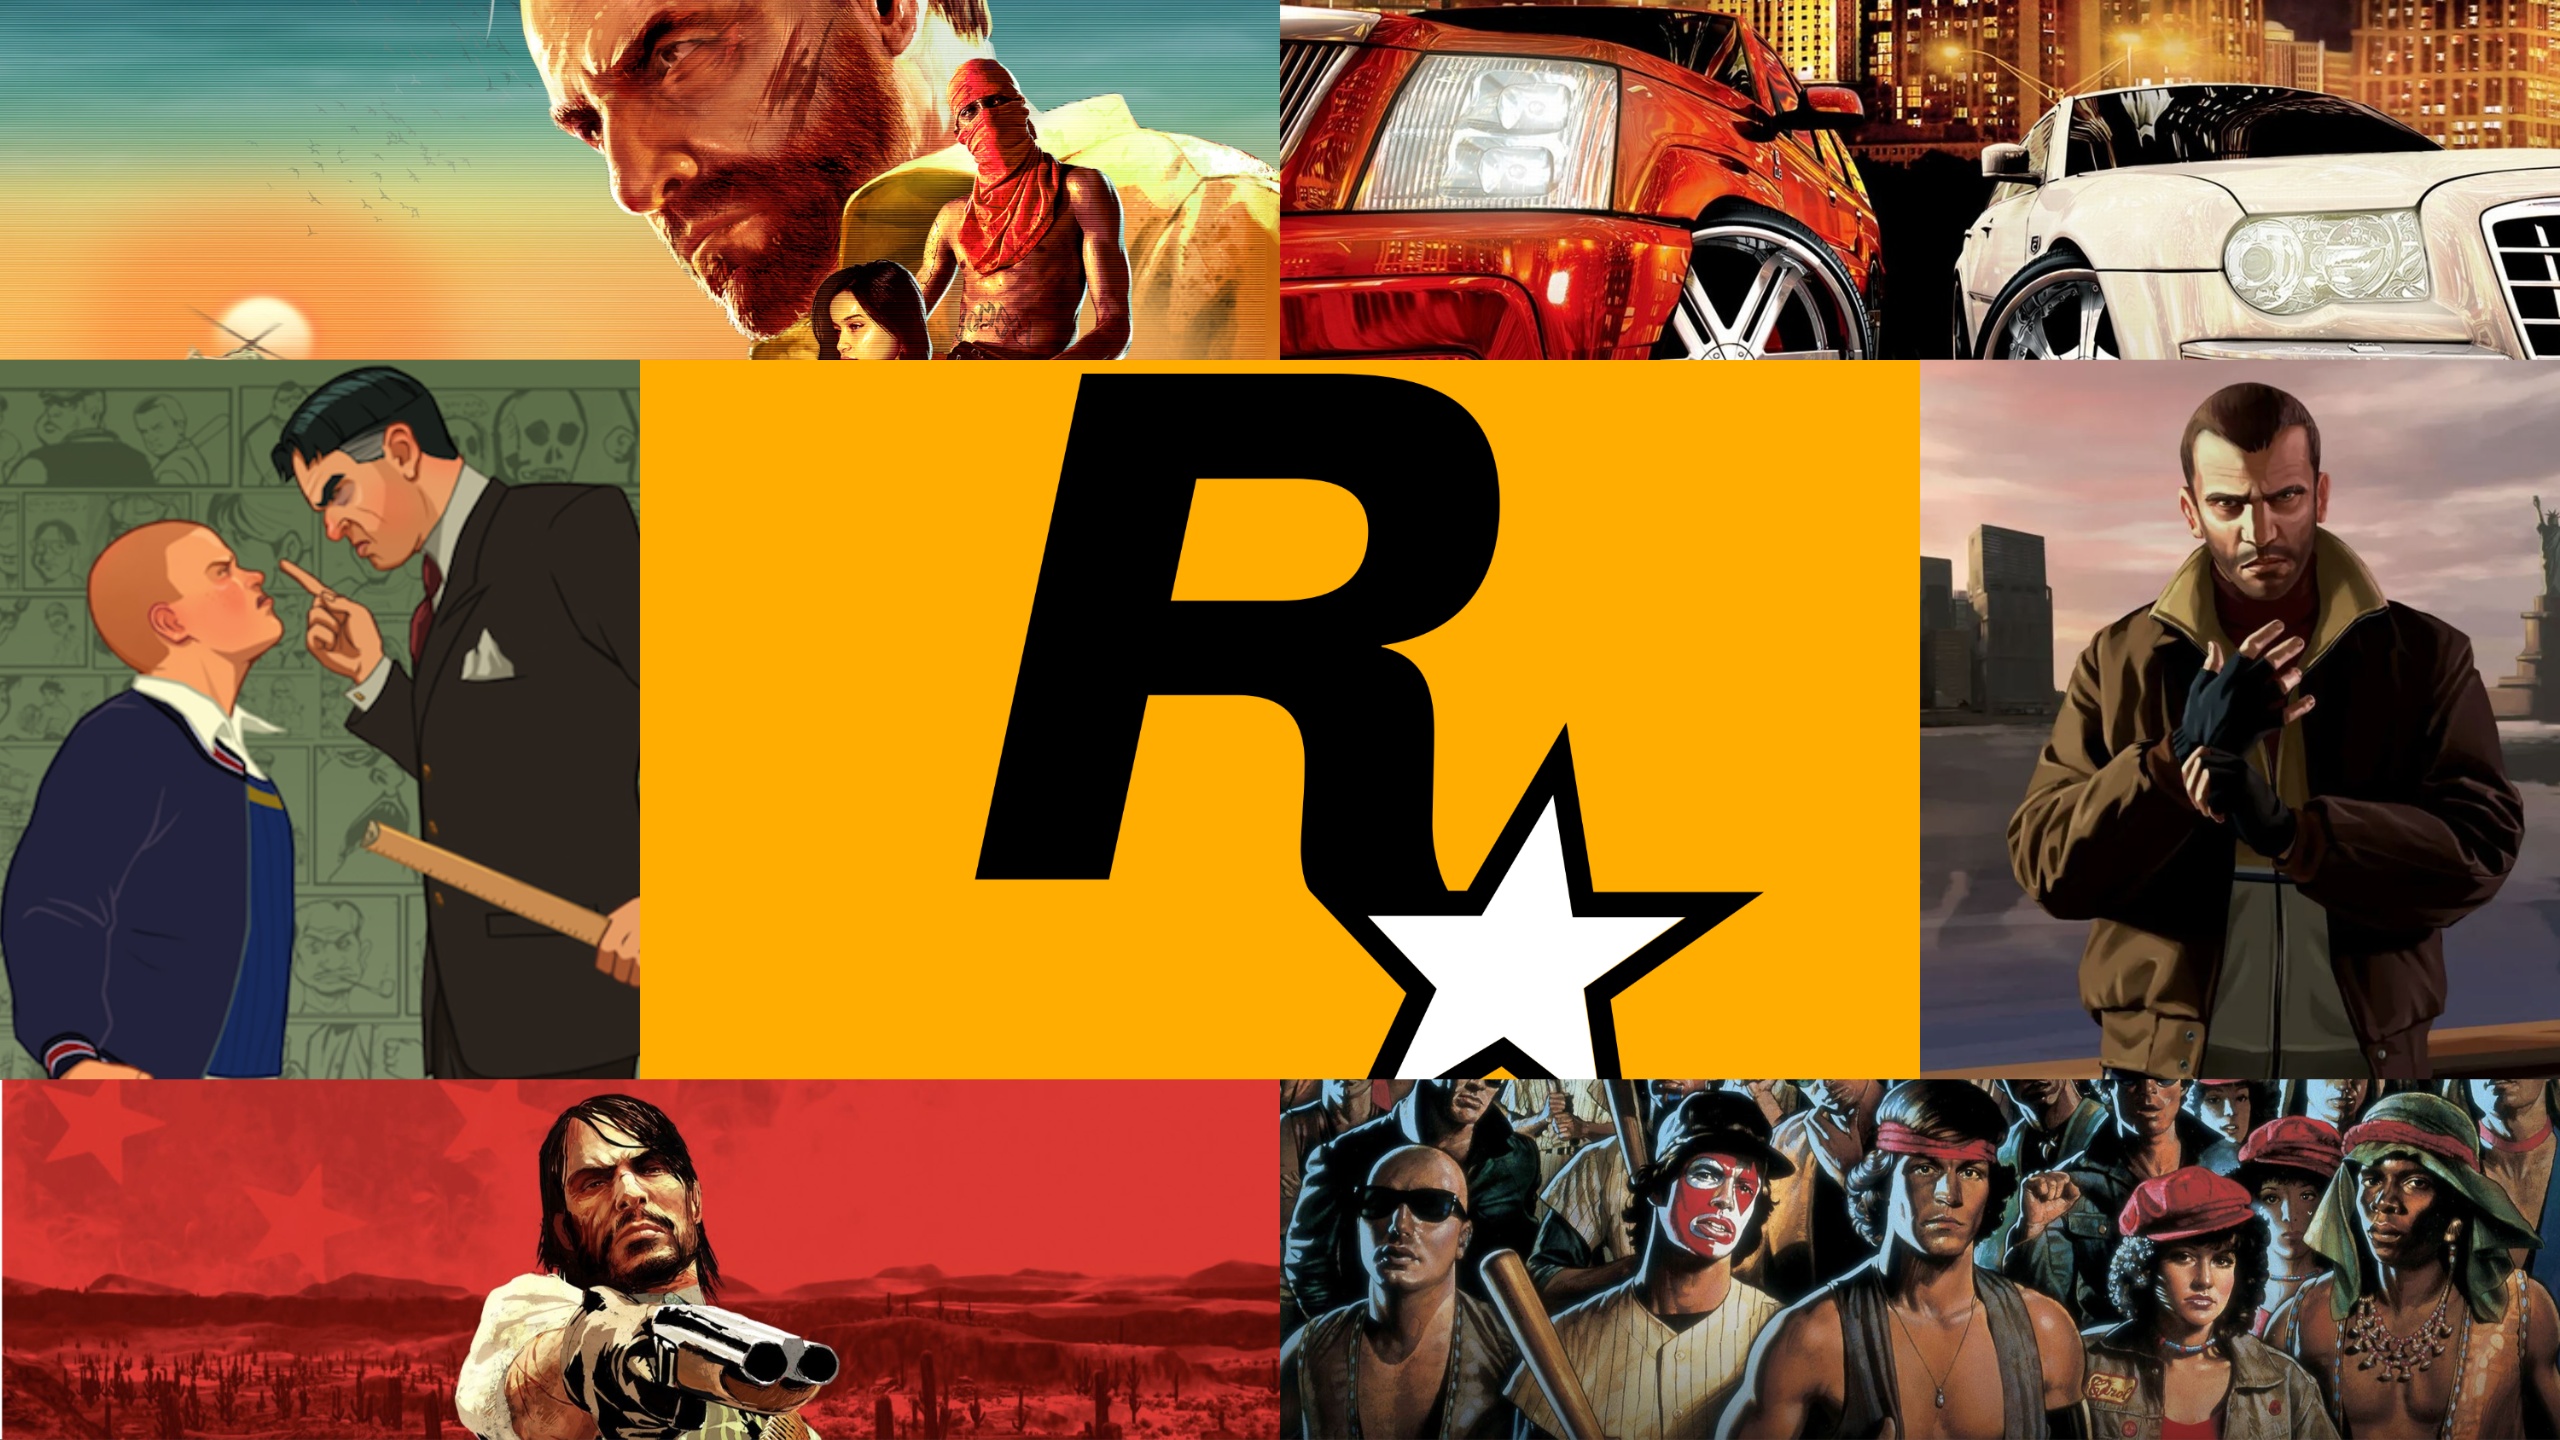 Rockstar Studios  Rockstar Universe